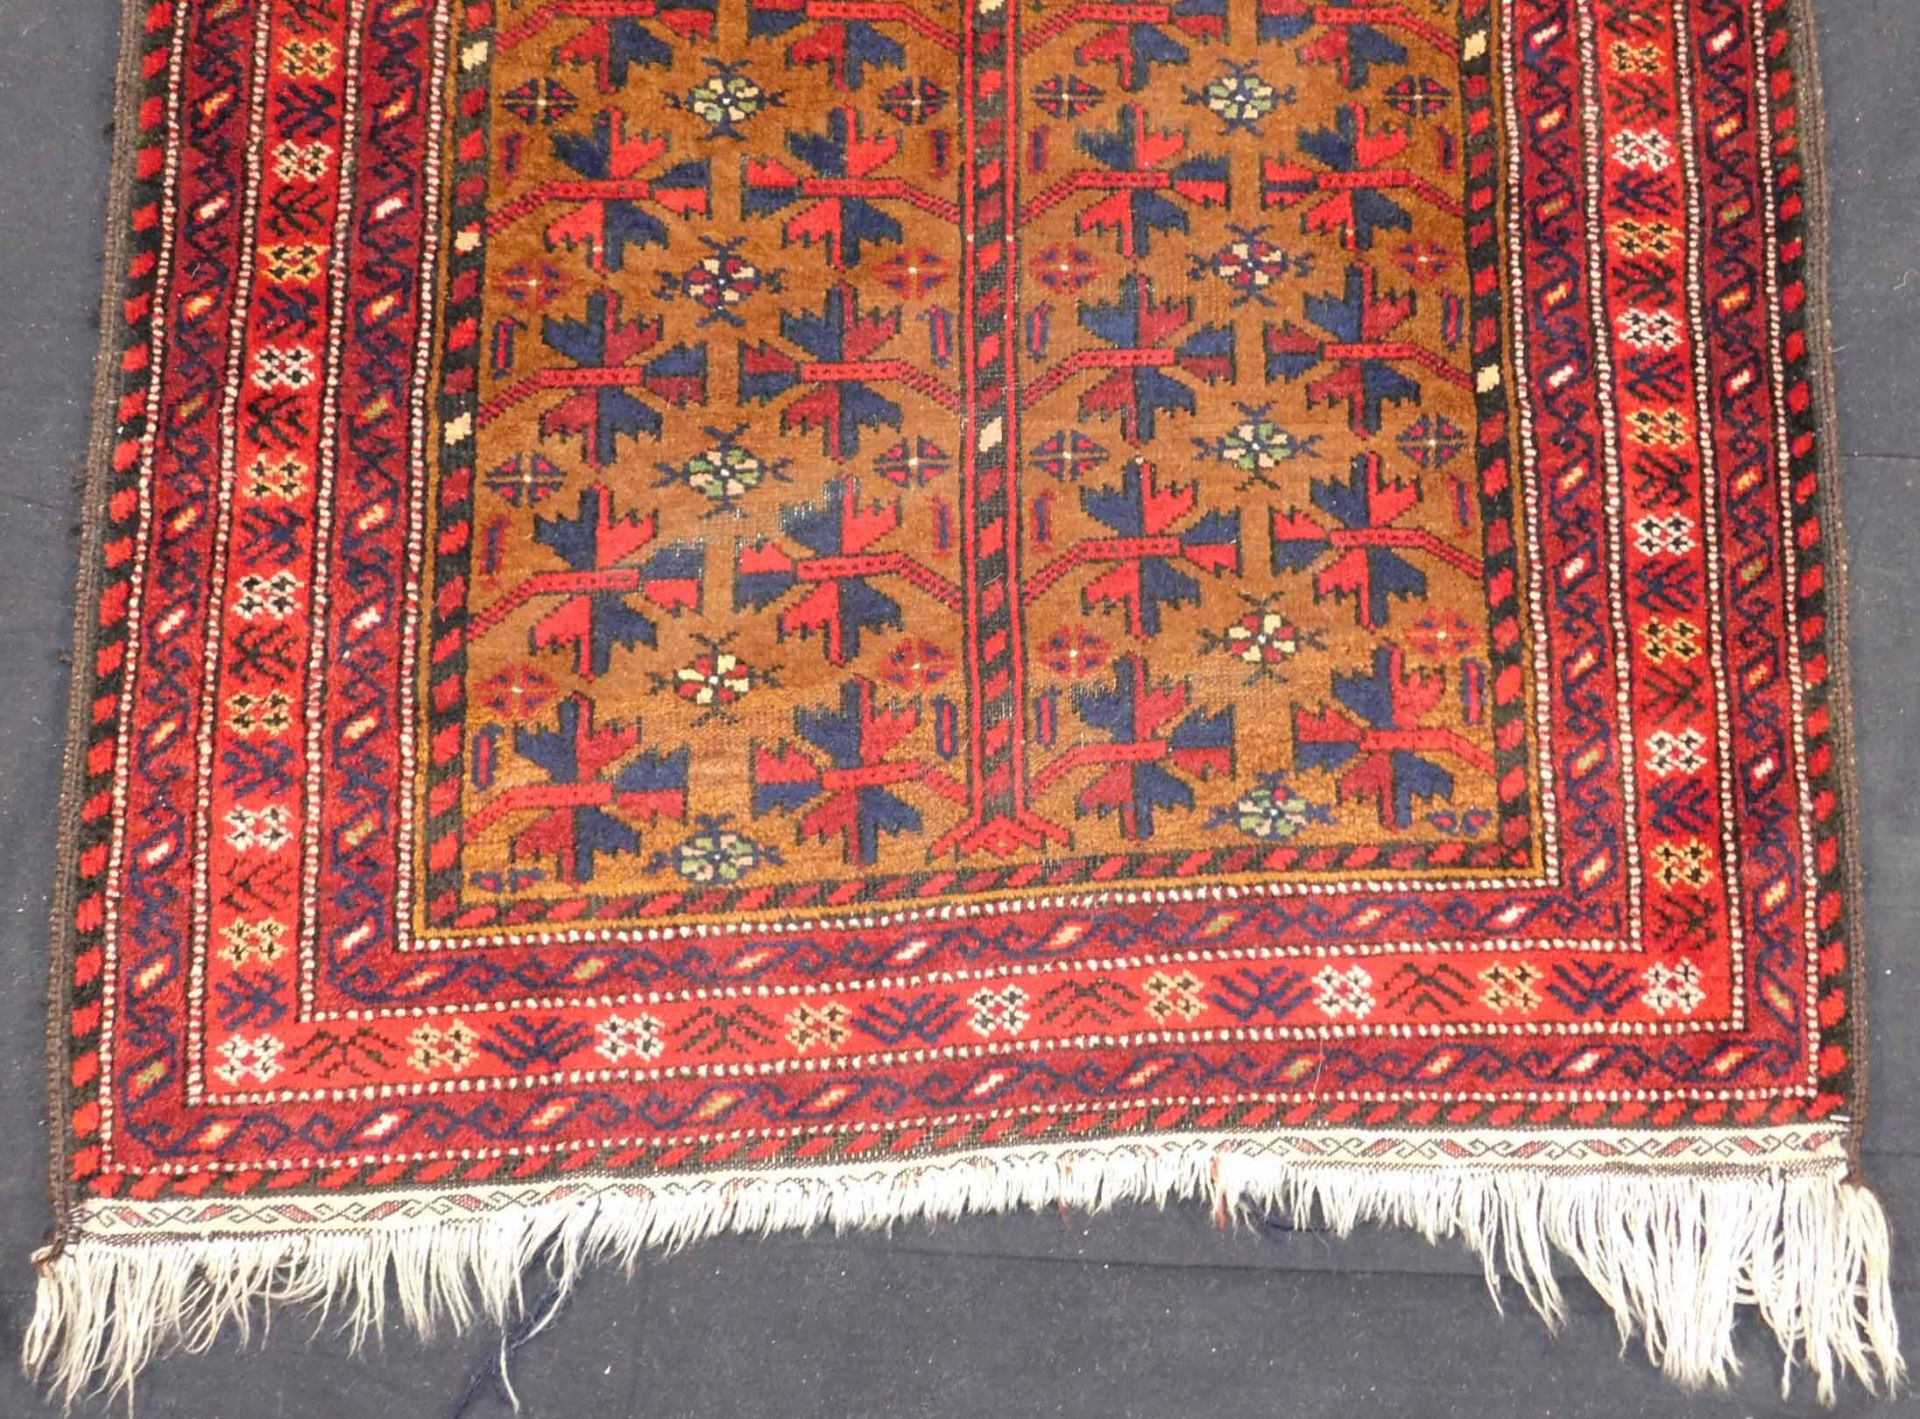 Baluchi prayer rug. Around 60 - 90 years old. - Image 2 of 5